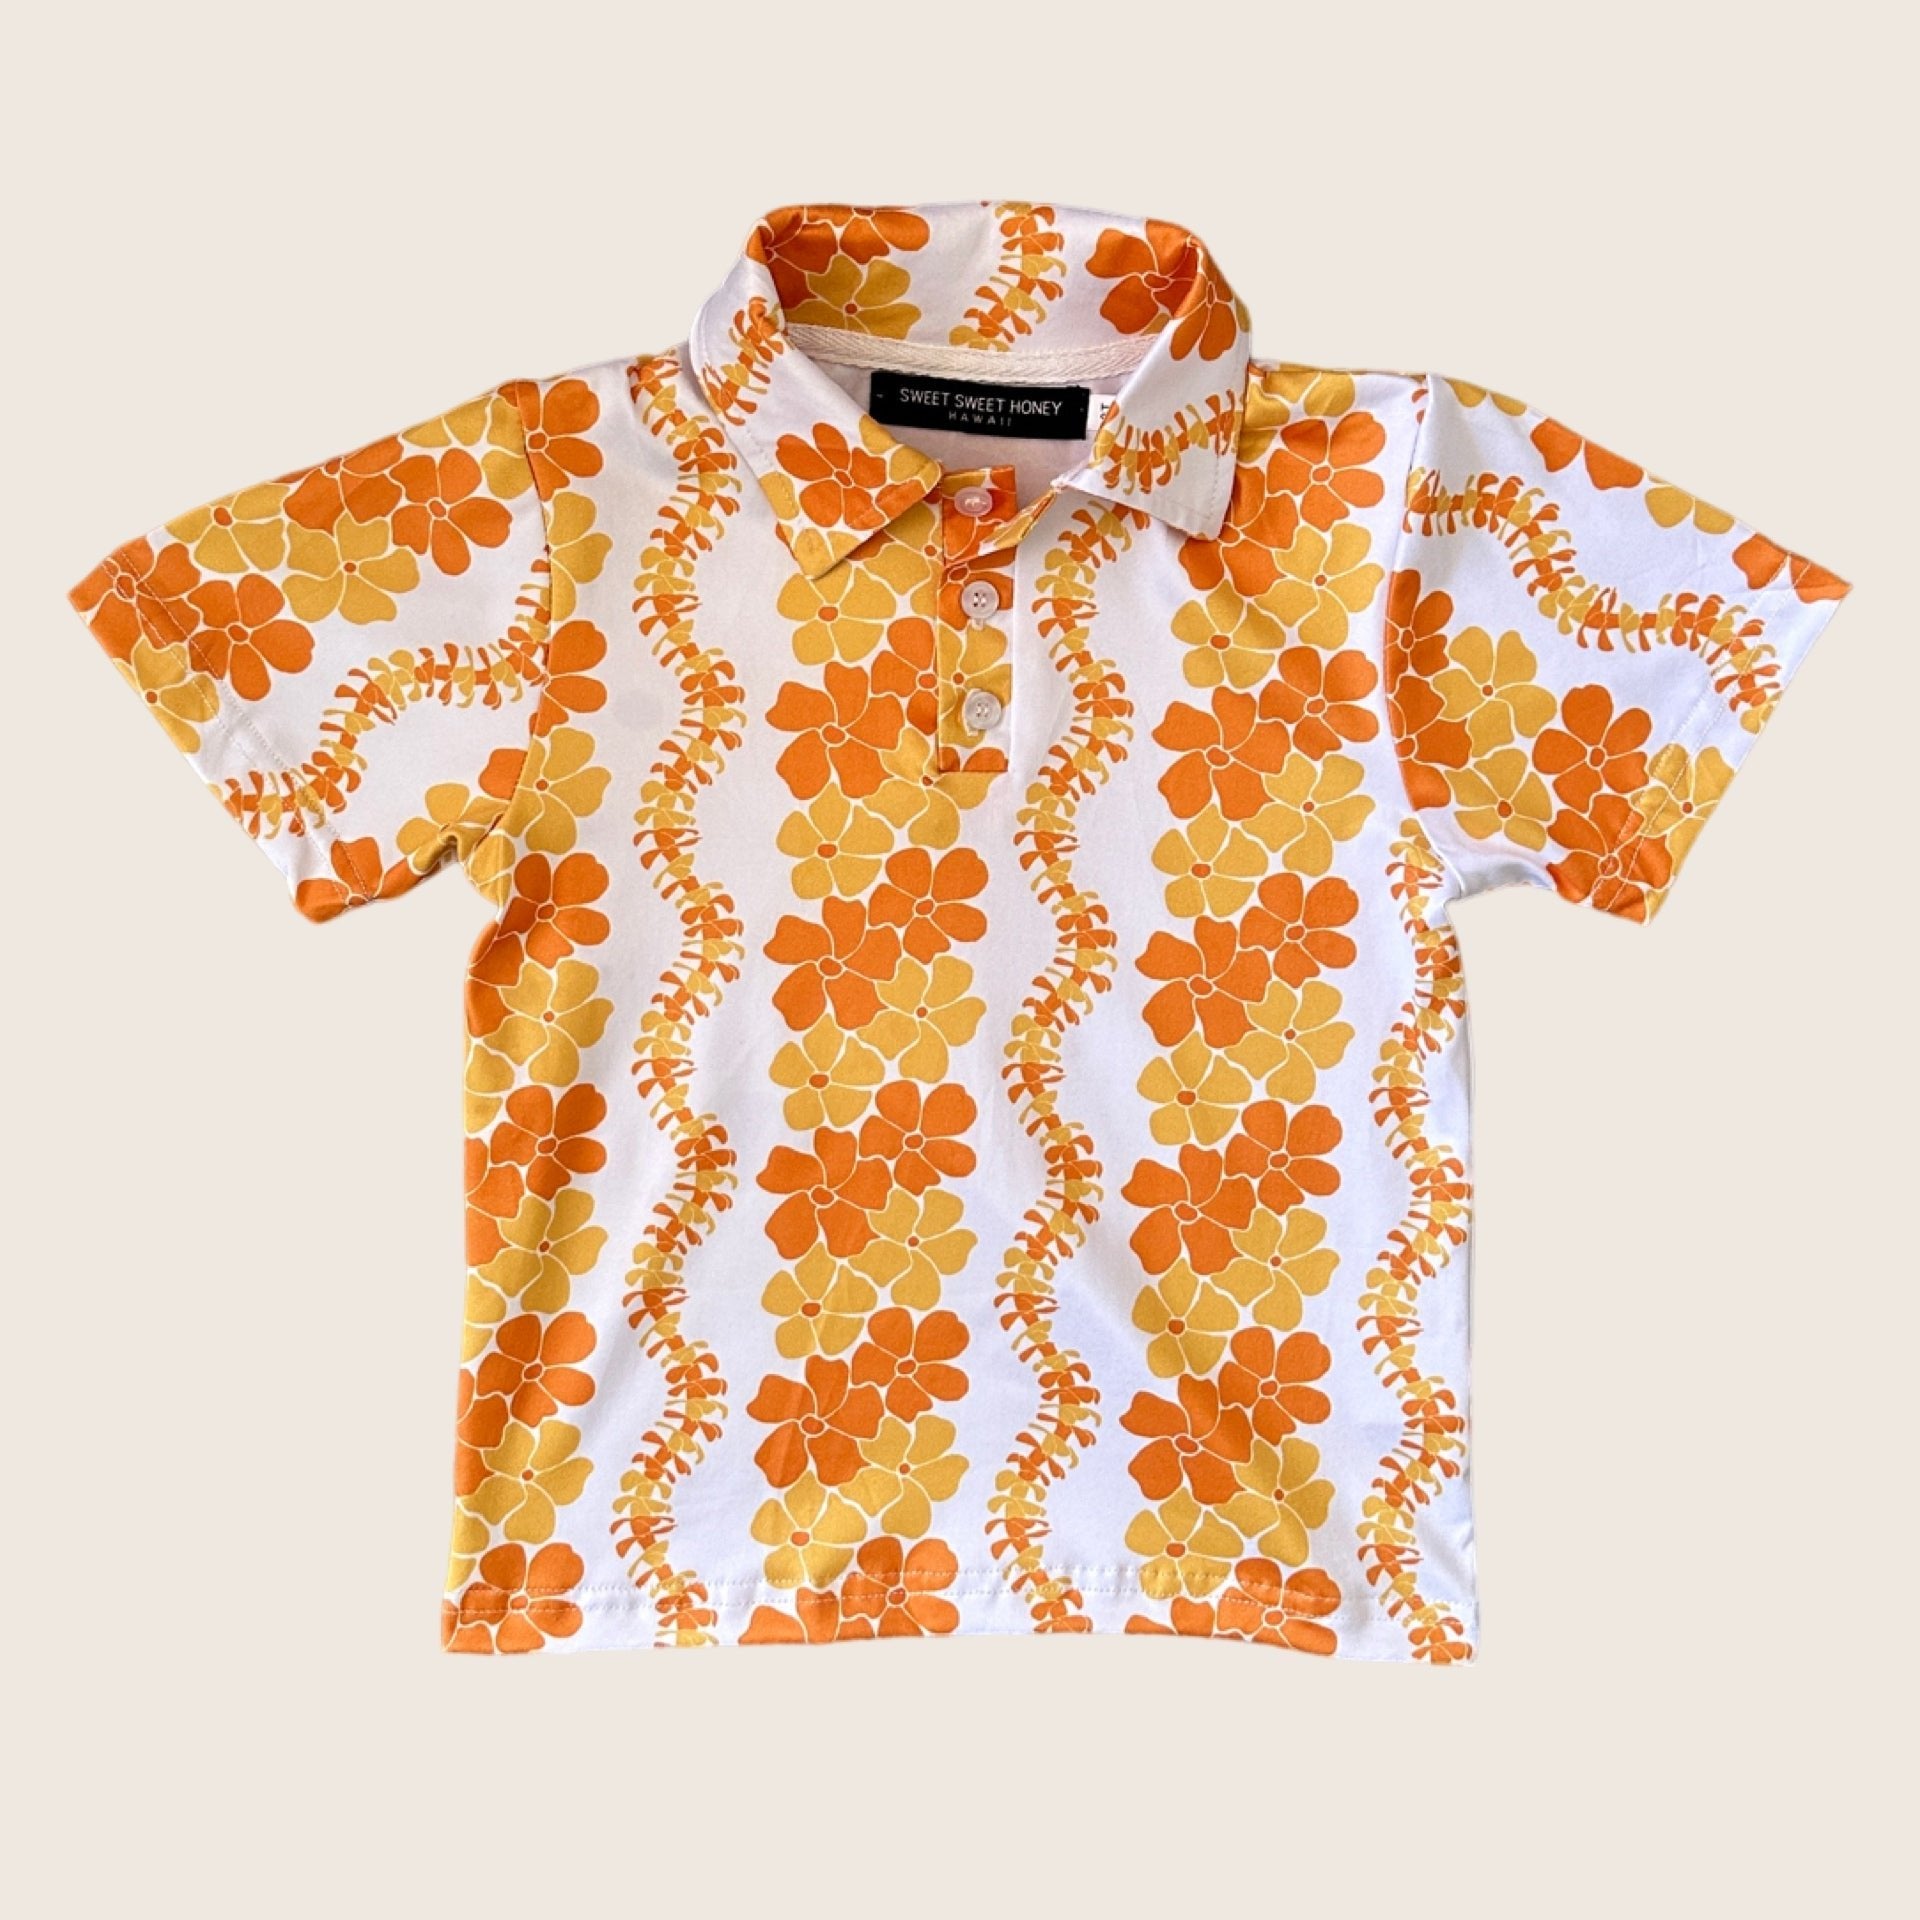 Honey Puakenikeni Collared Shirt - Sweet Sweet Honey Hawaii